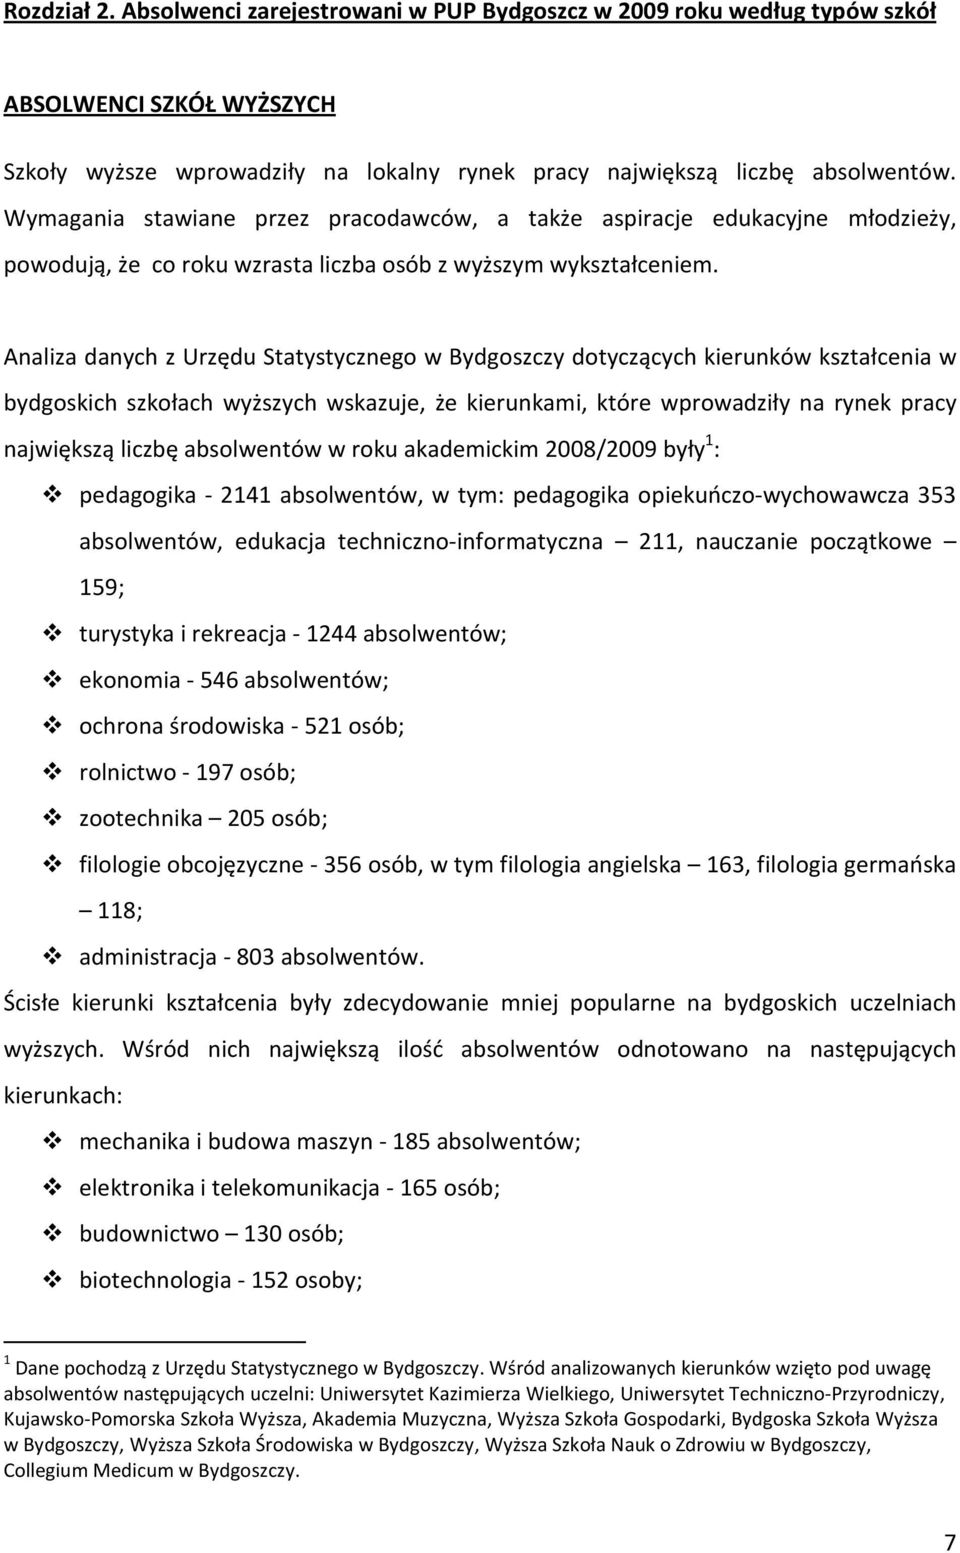 Analiza danych z Urzędu Statystycznego w Bydgoszczy dotyczących kierunków kształcenia w bydgoskich szkołach wyższych wskazuje, że kierunkami, które wprowadziły na rynek pracy największą liczbę